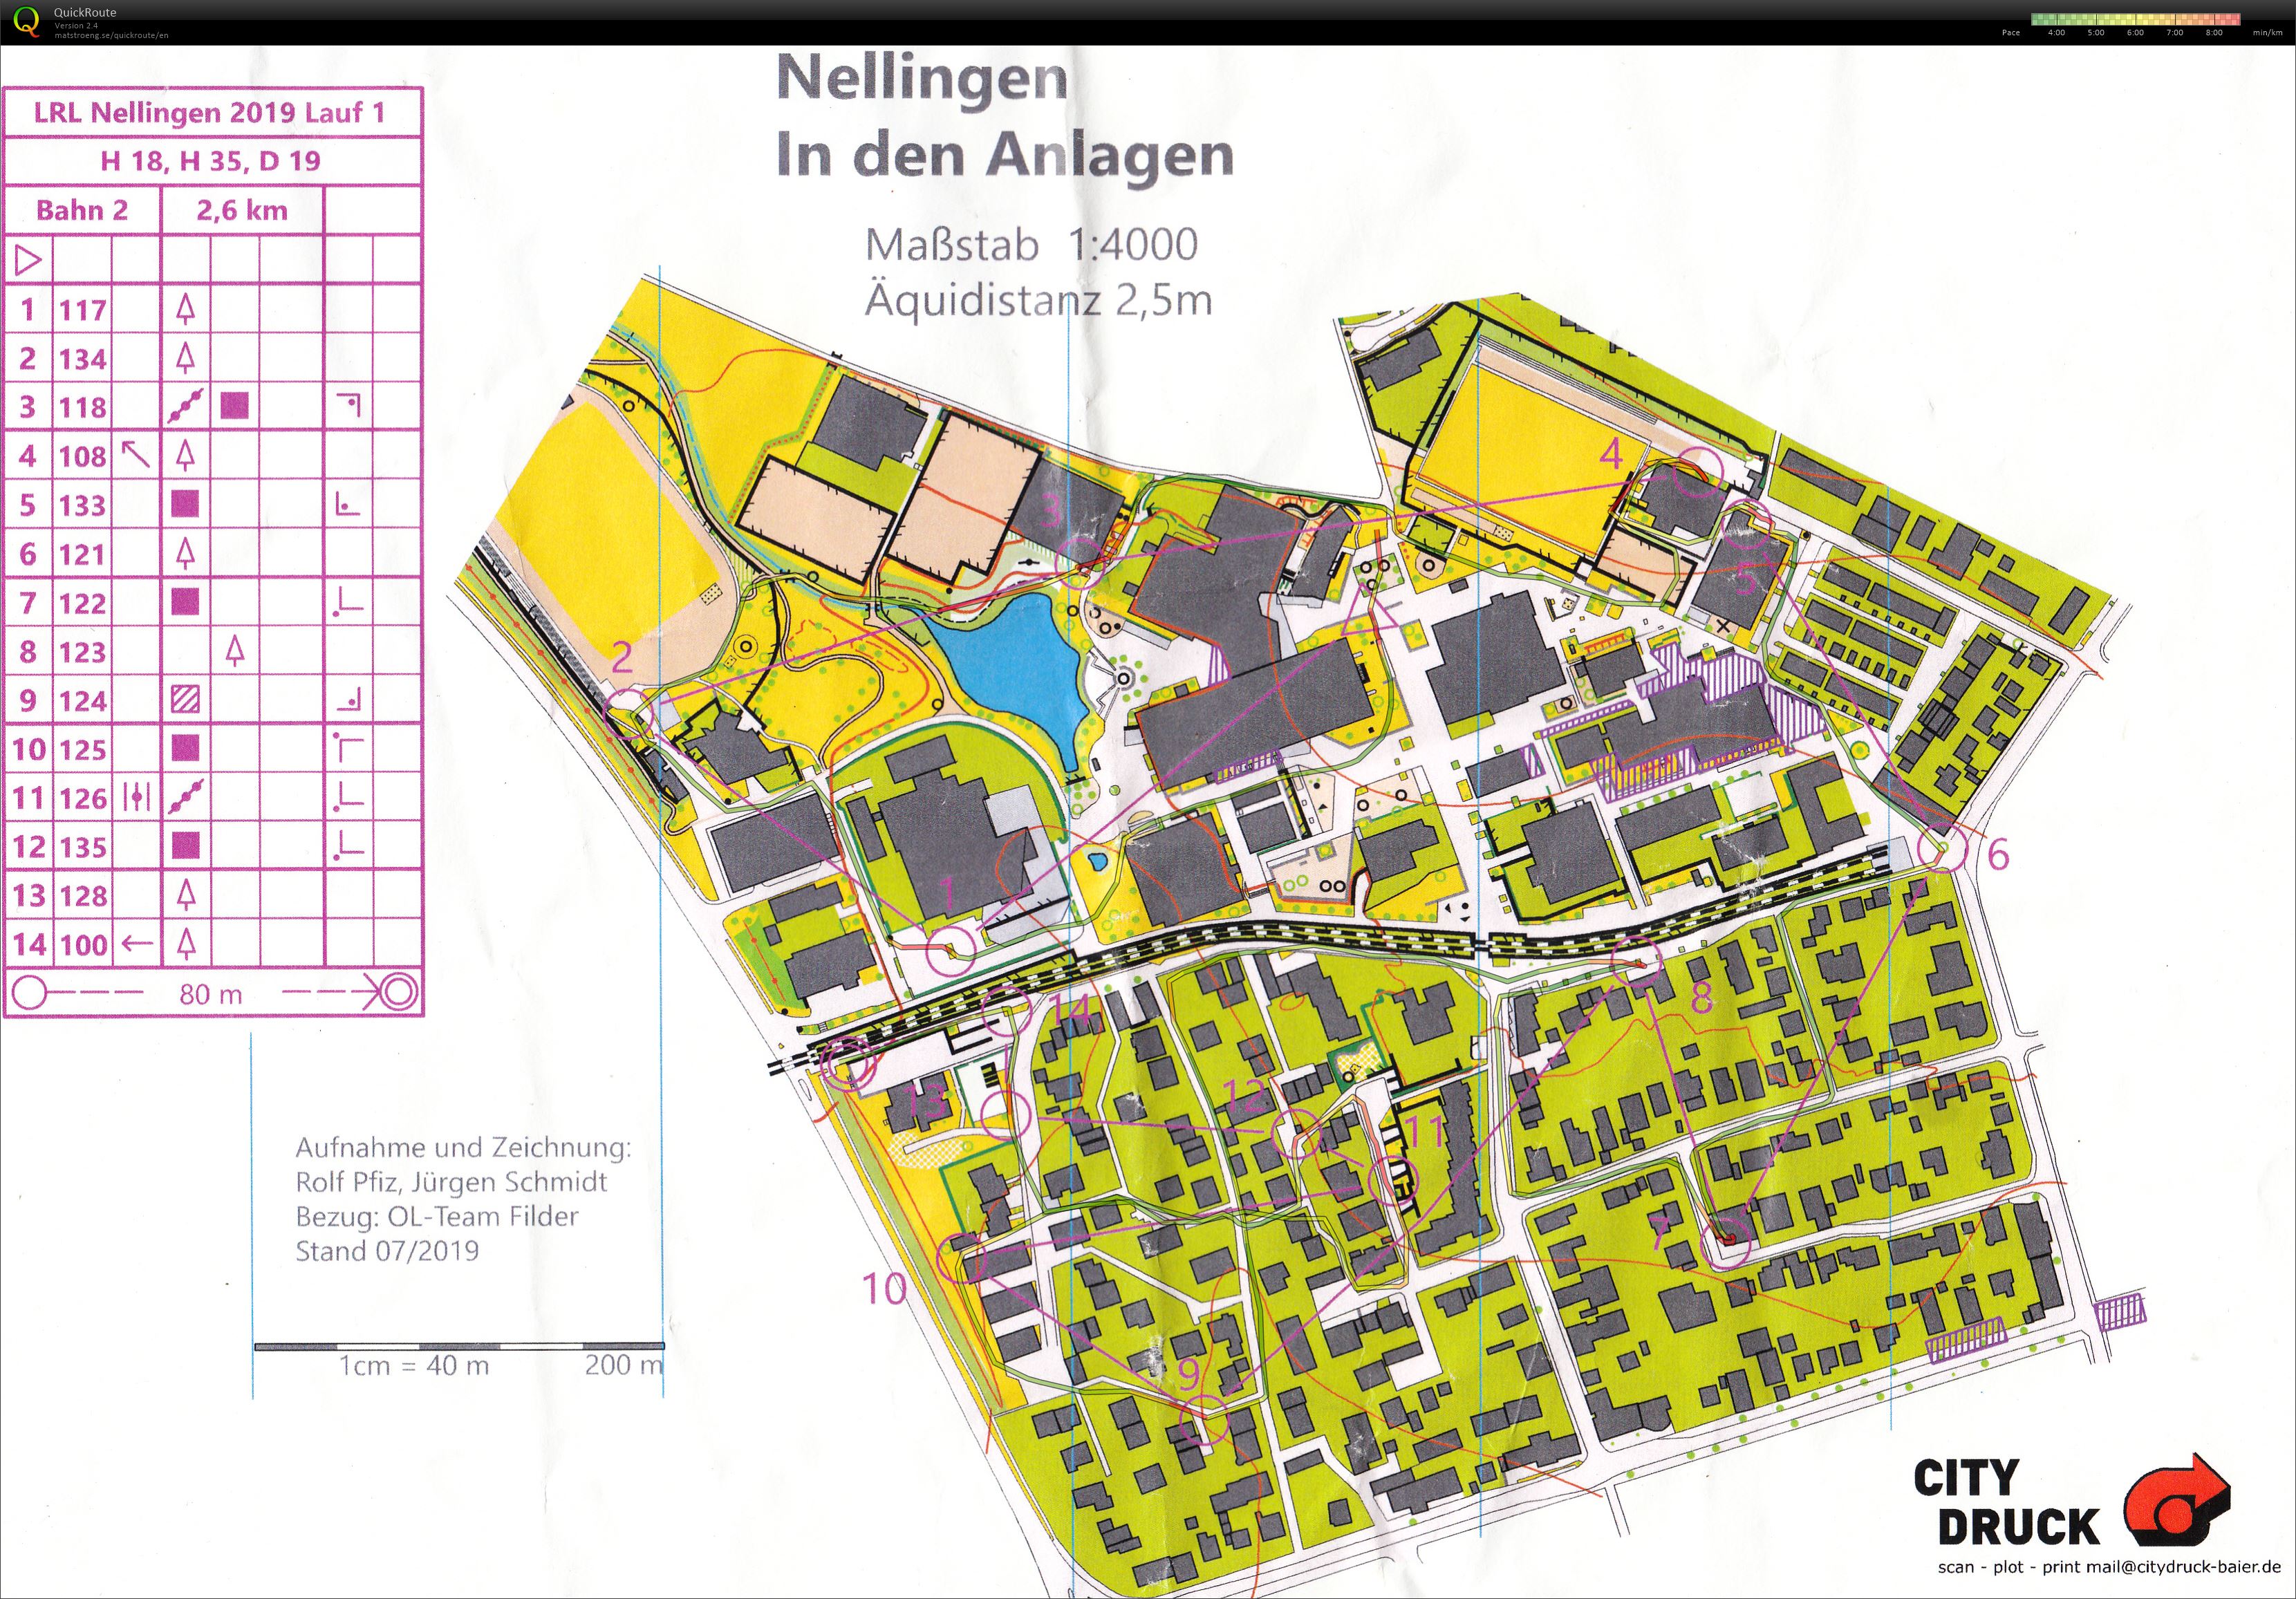 LRL Nellingen - 1 (20-07-2019)